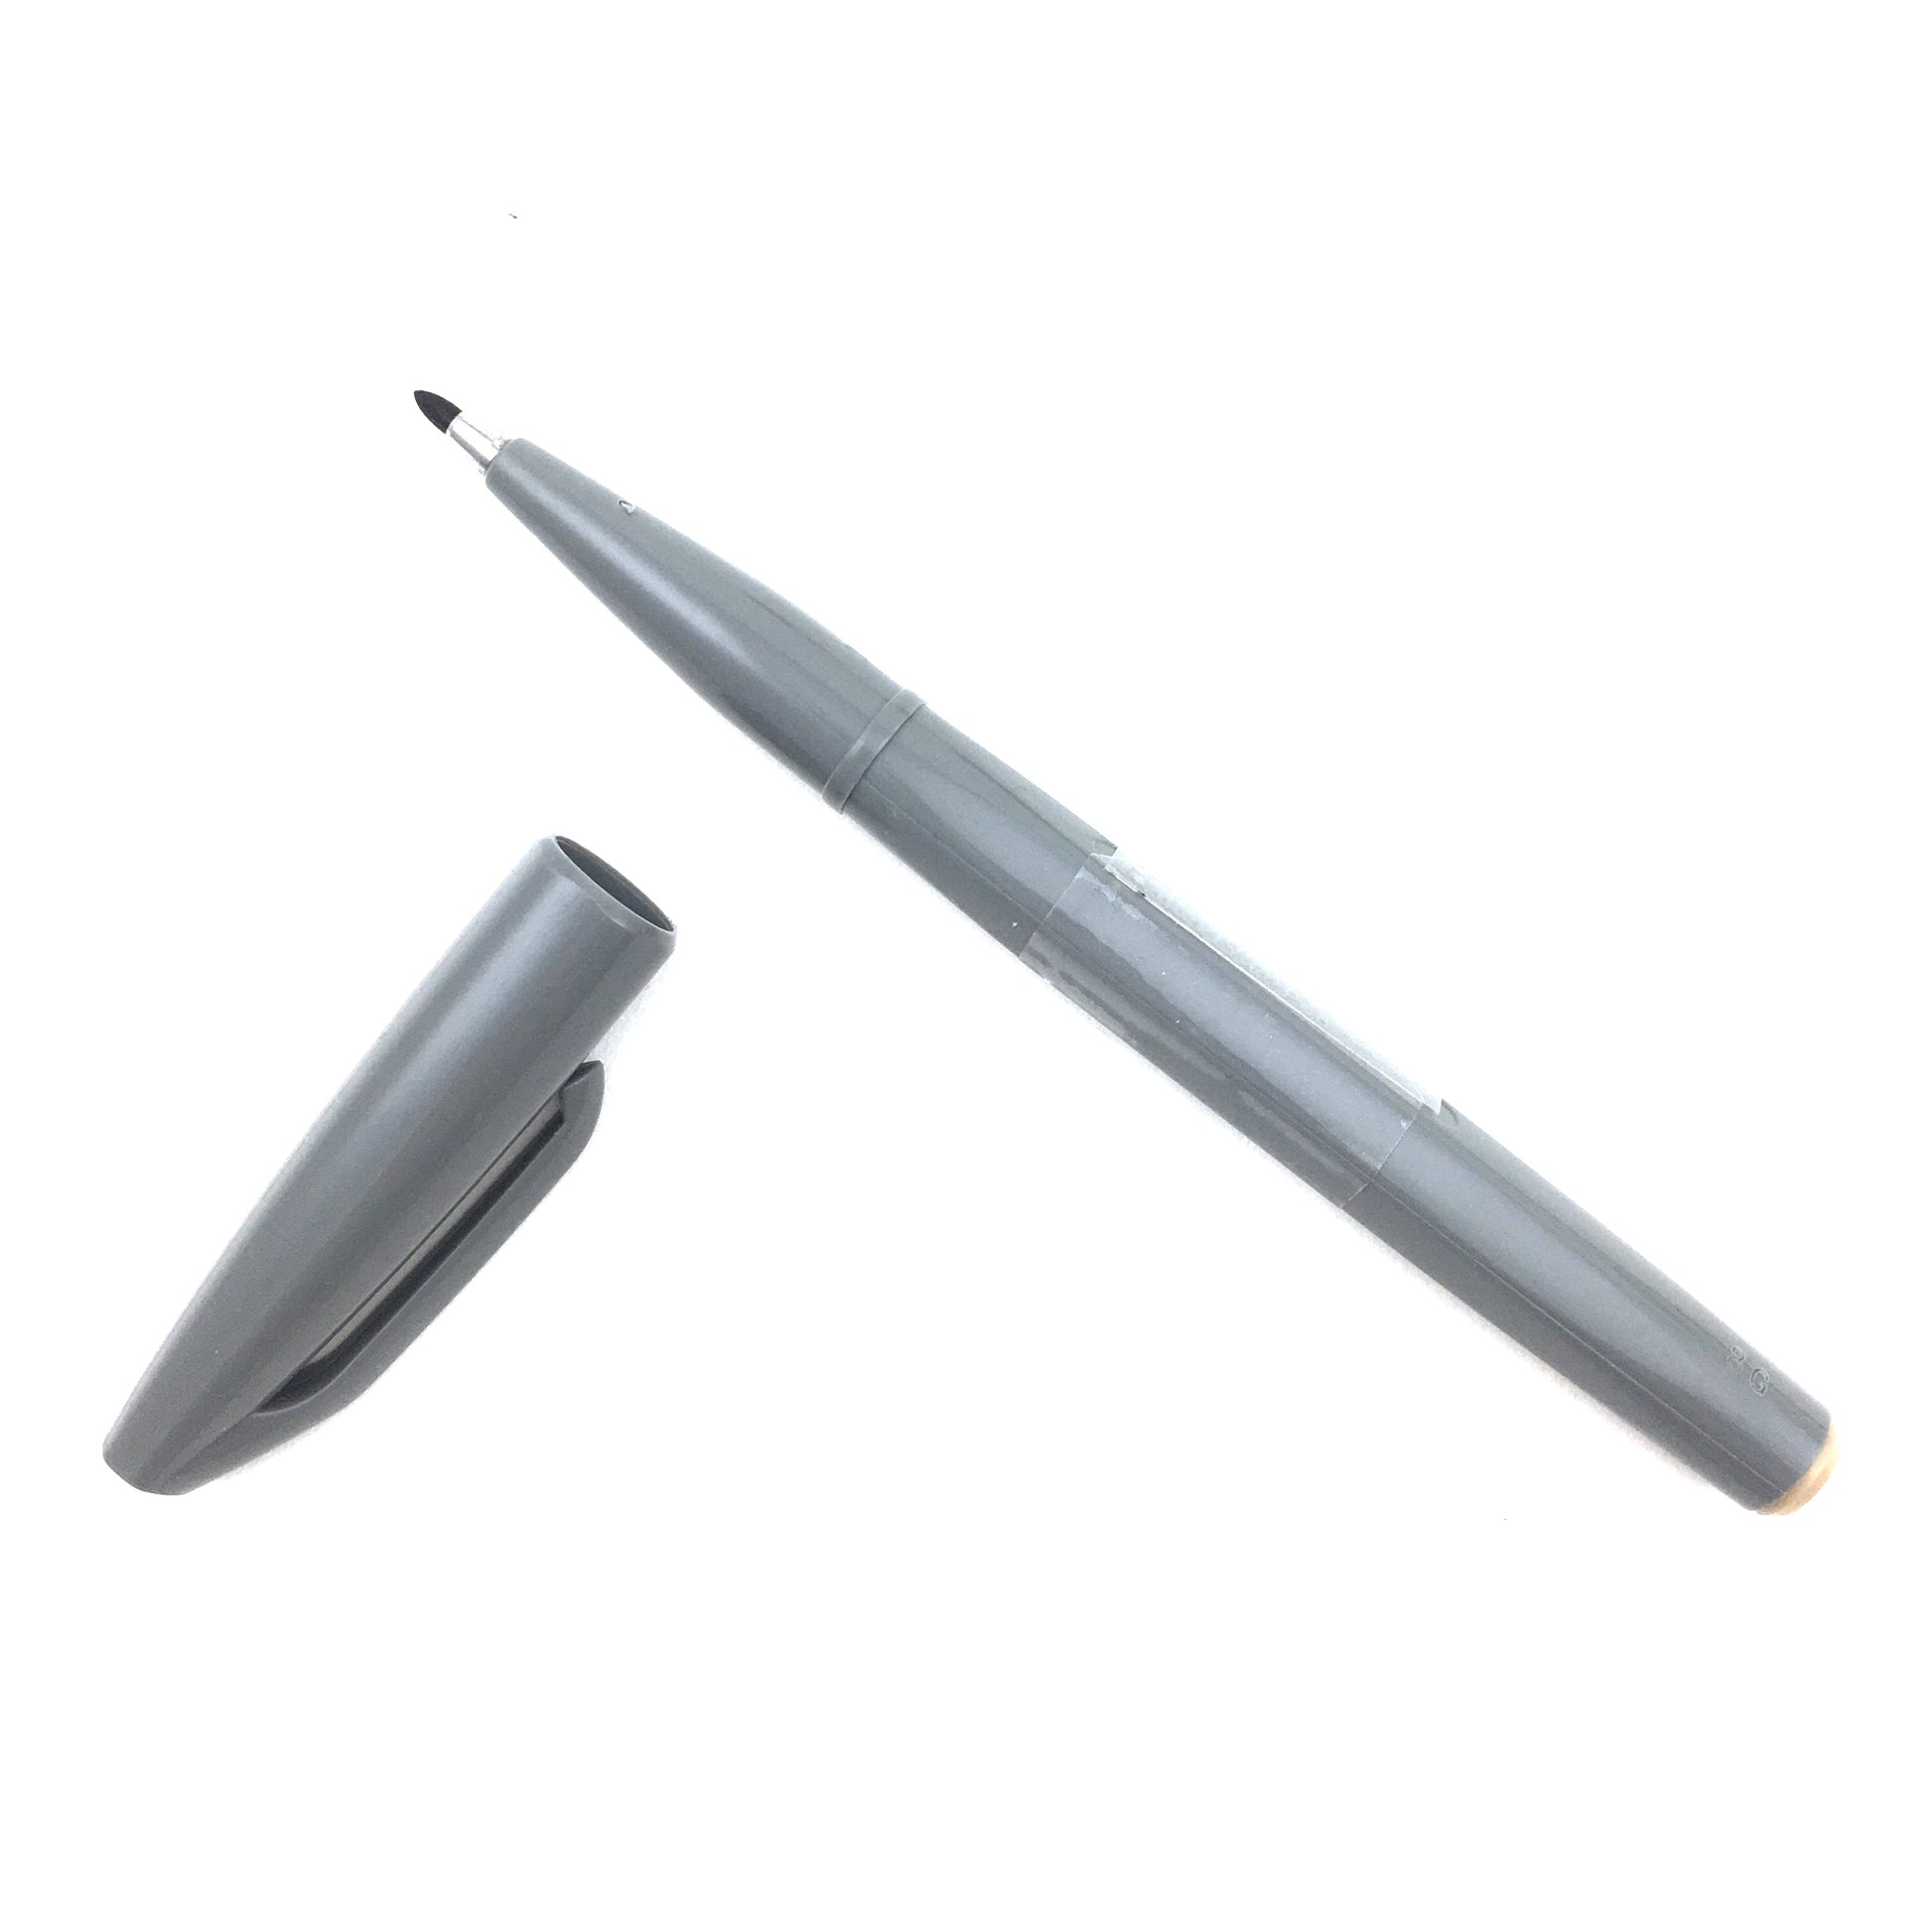 Pentel Sign Pen with Fiber Tip - Gray by Pentel - K. A. Artist Shop